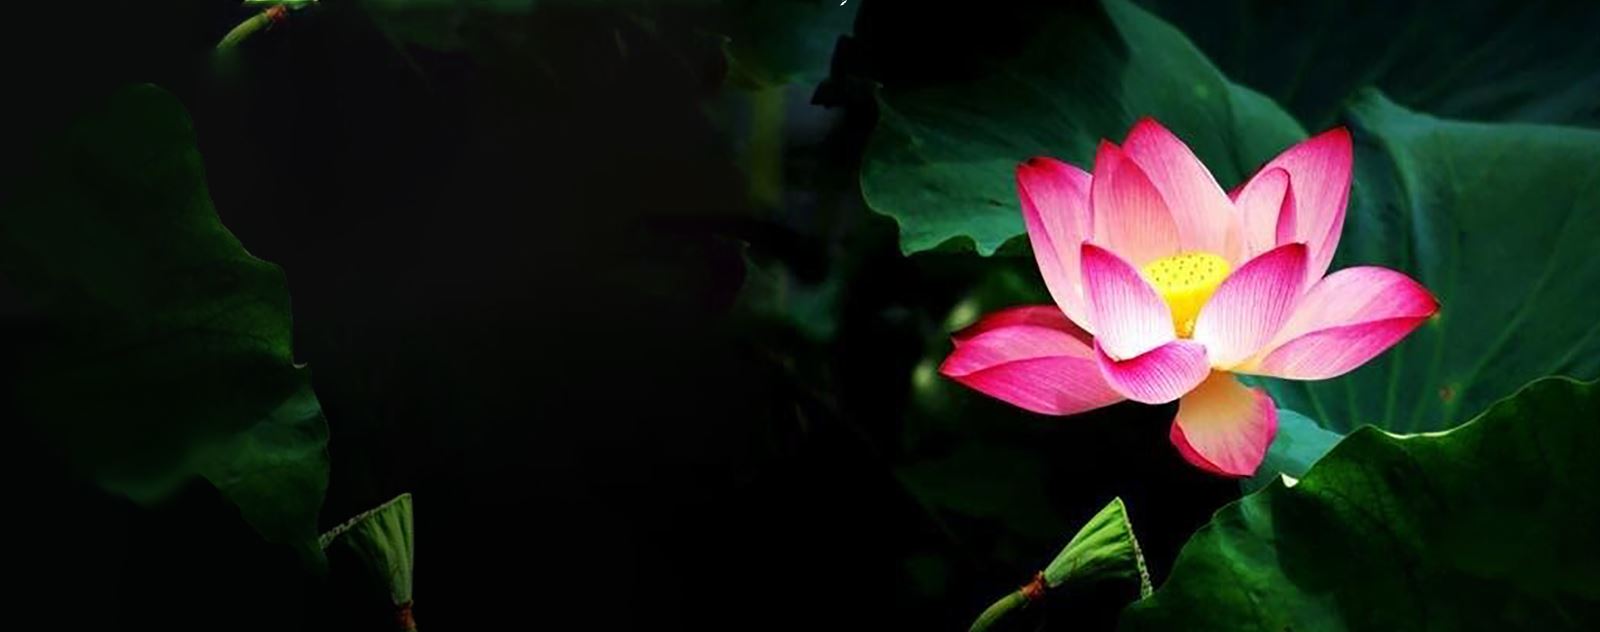 Signification fleur de lotus